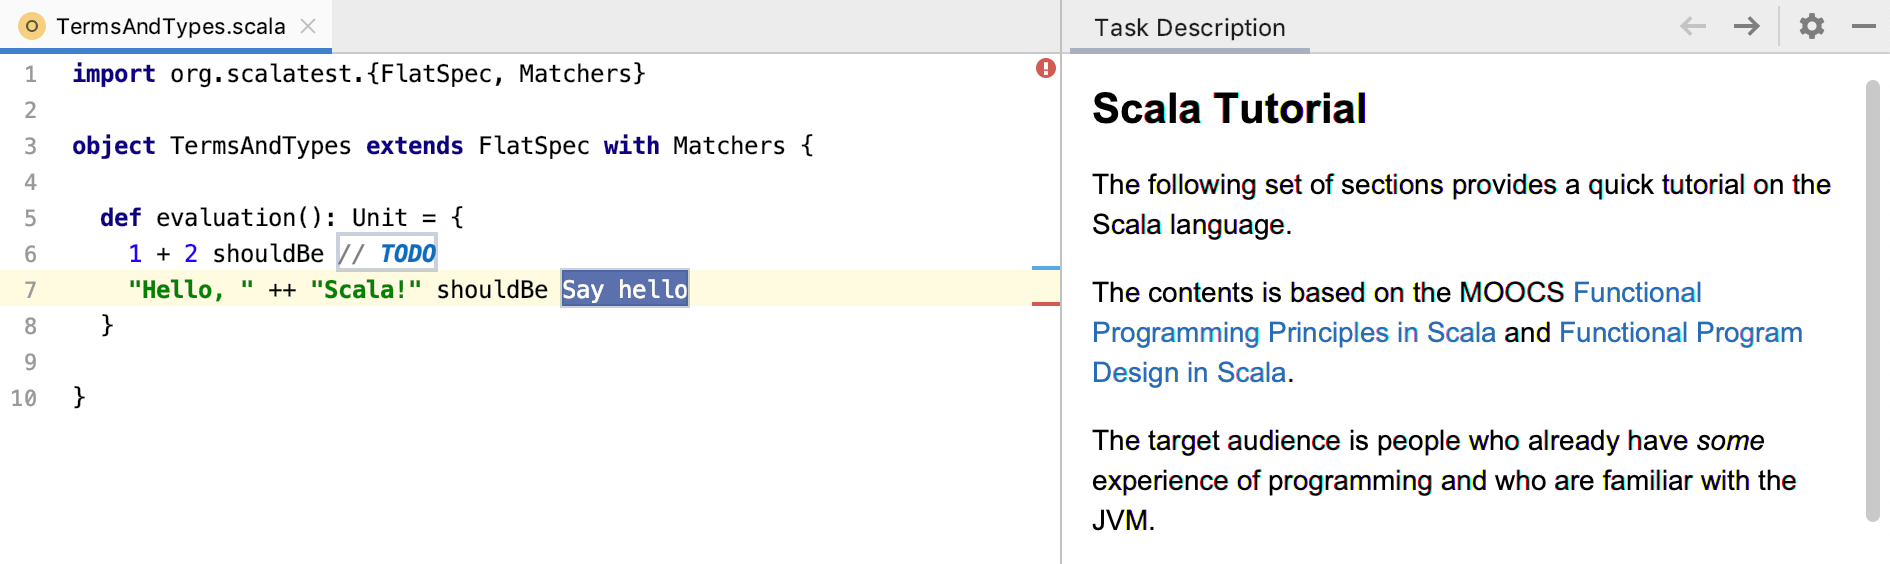 edu task description scala tutorial